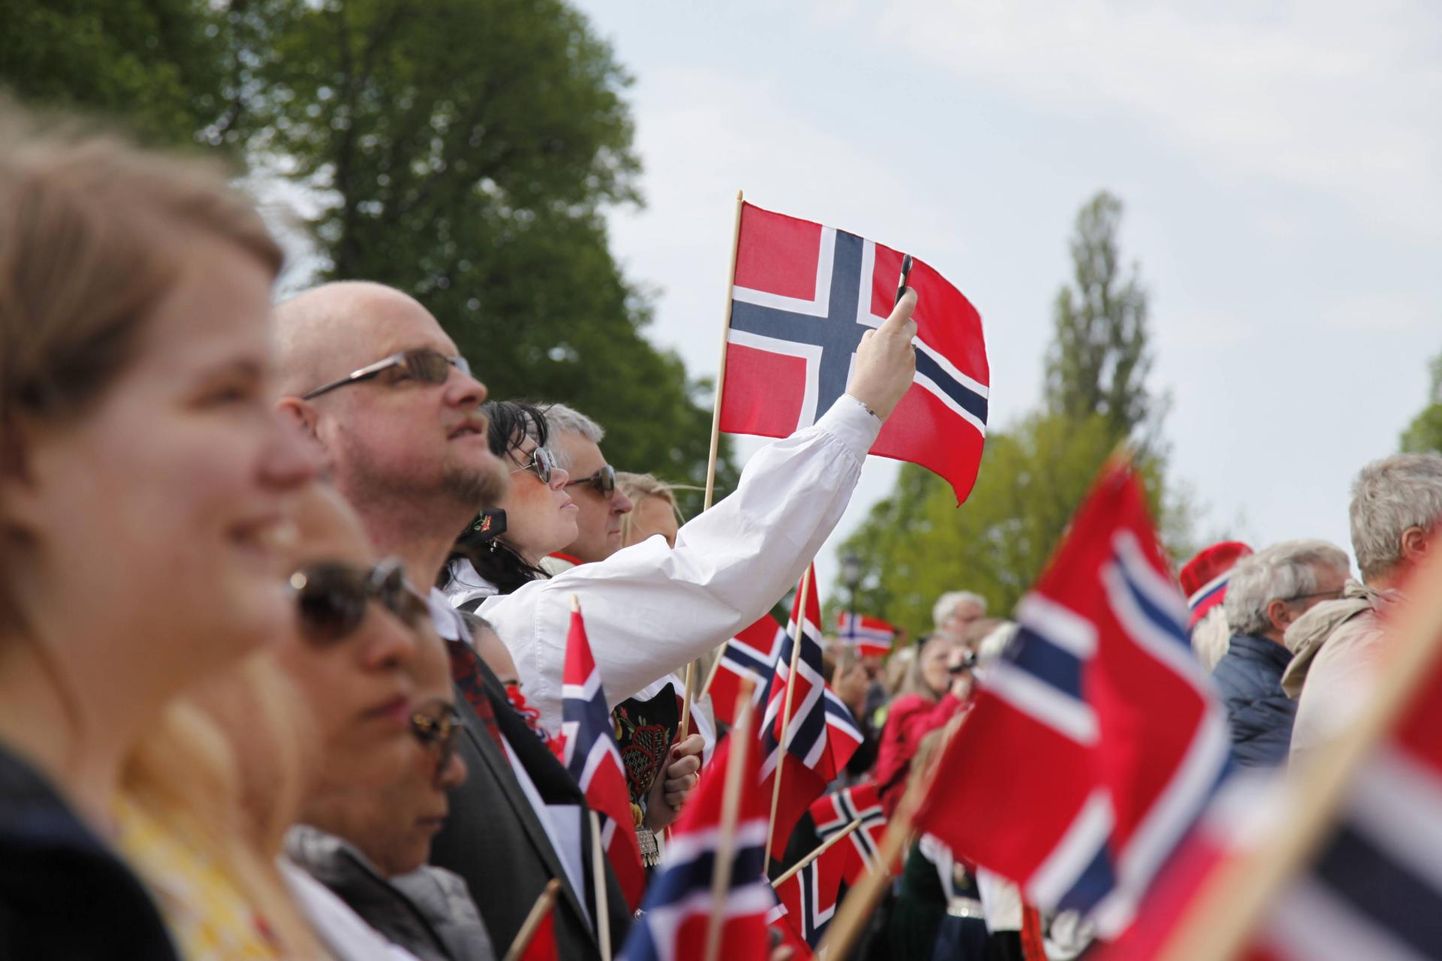 Norralased Oslos konstitutsioonipäeva tähistamas. Kuigi suurem osa Norra elanikke toetab võimalikult lähedast suhet Euroopa Liiduga, on ühendusse kuulumise pooldajaid vähe. 